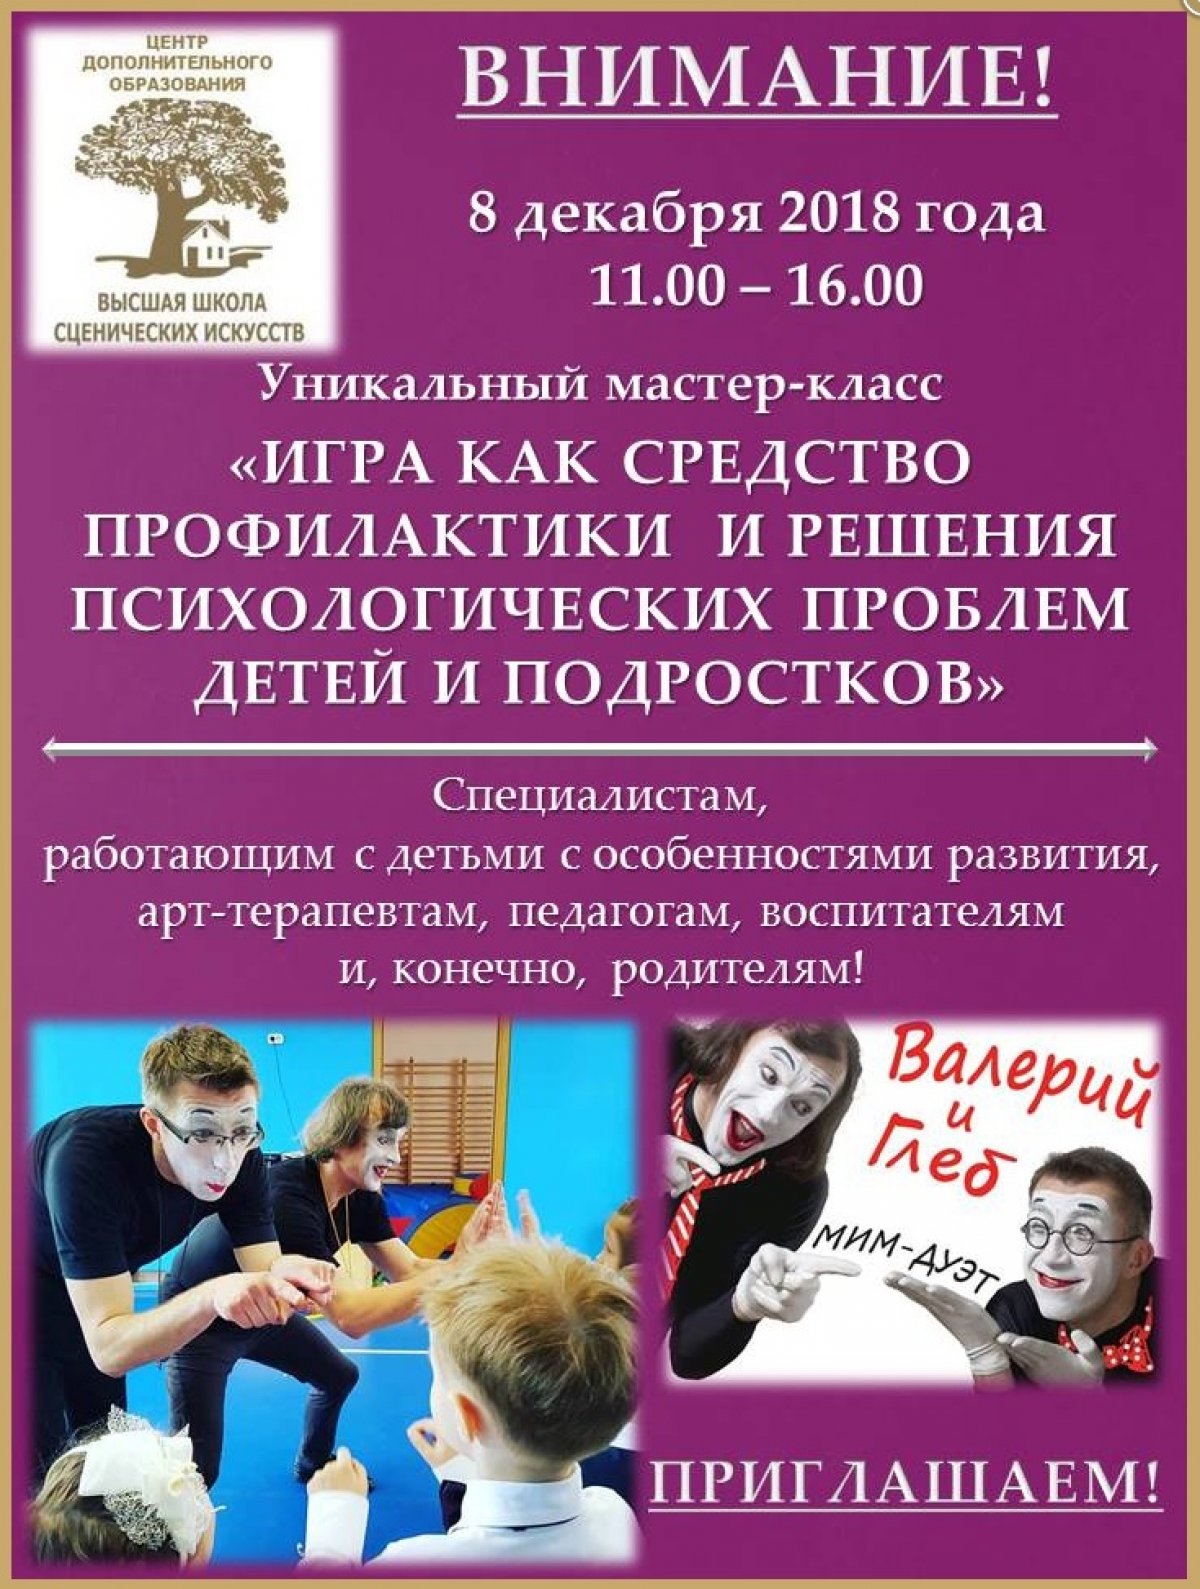 «Театральная школа Константина Райкина» приглашает на уникальный мастер-класс по теме «Игра как средство профилактики и решения психологических проблем детей и подростков», который состоится 8 декабря 2018 года.